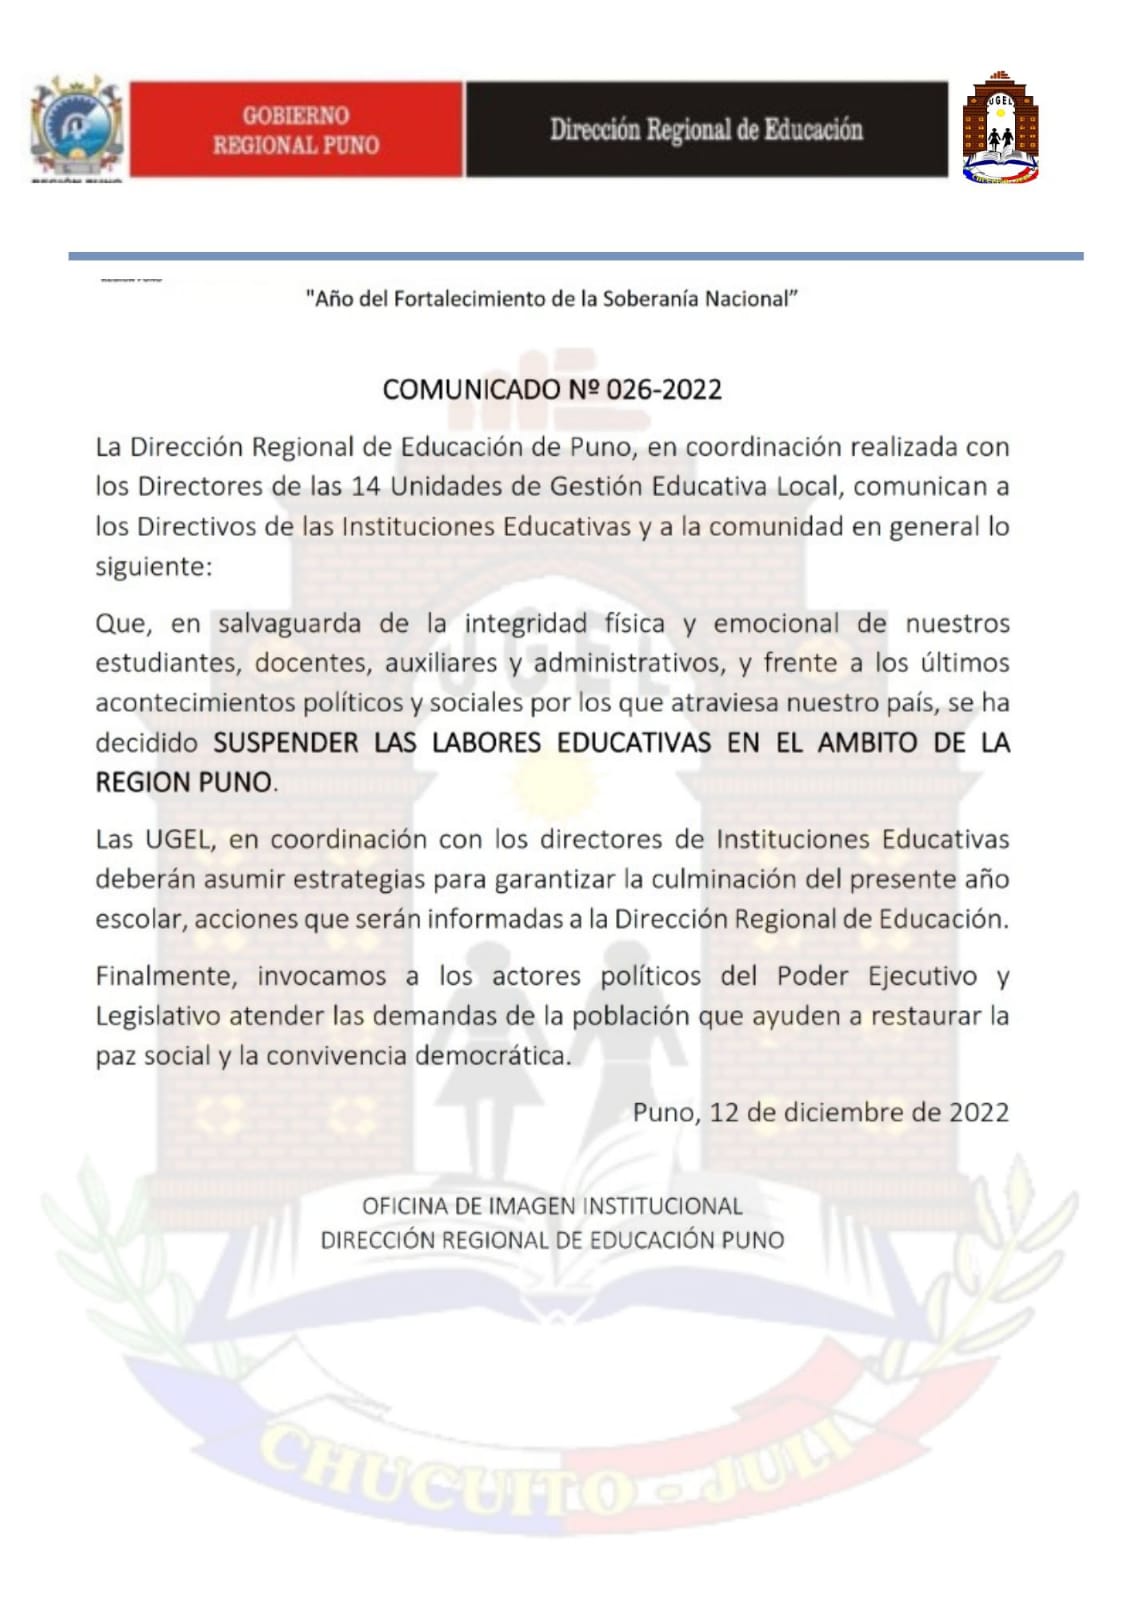 COMUNICADO: SUSPENSIÓN  DE LABORES EDUCATIVAS EN EL AMBITO DE LA REGIÓN PUNO.